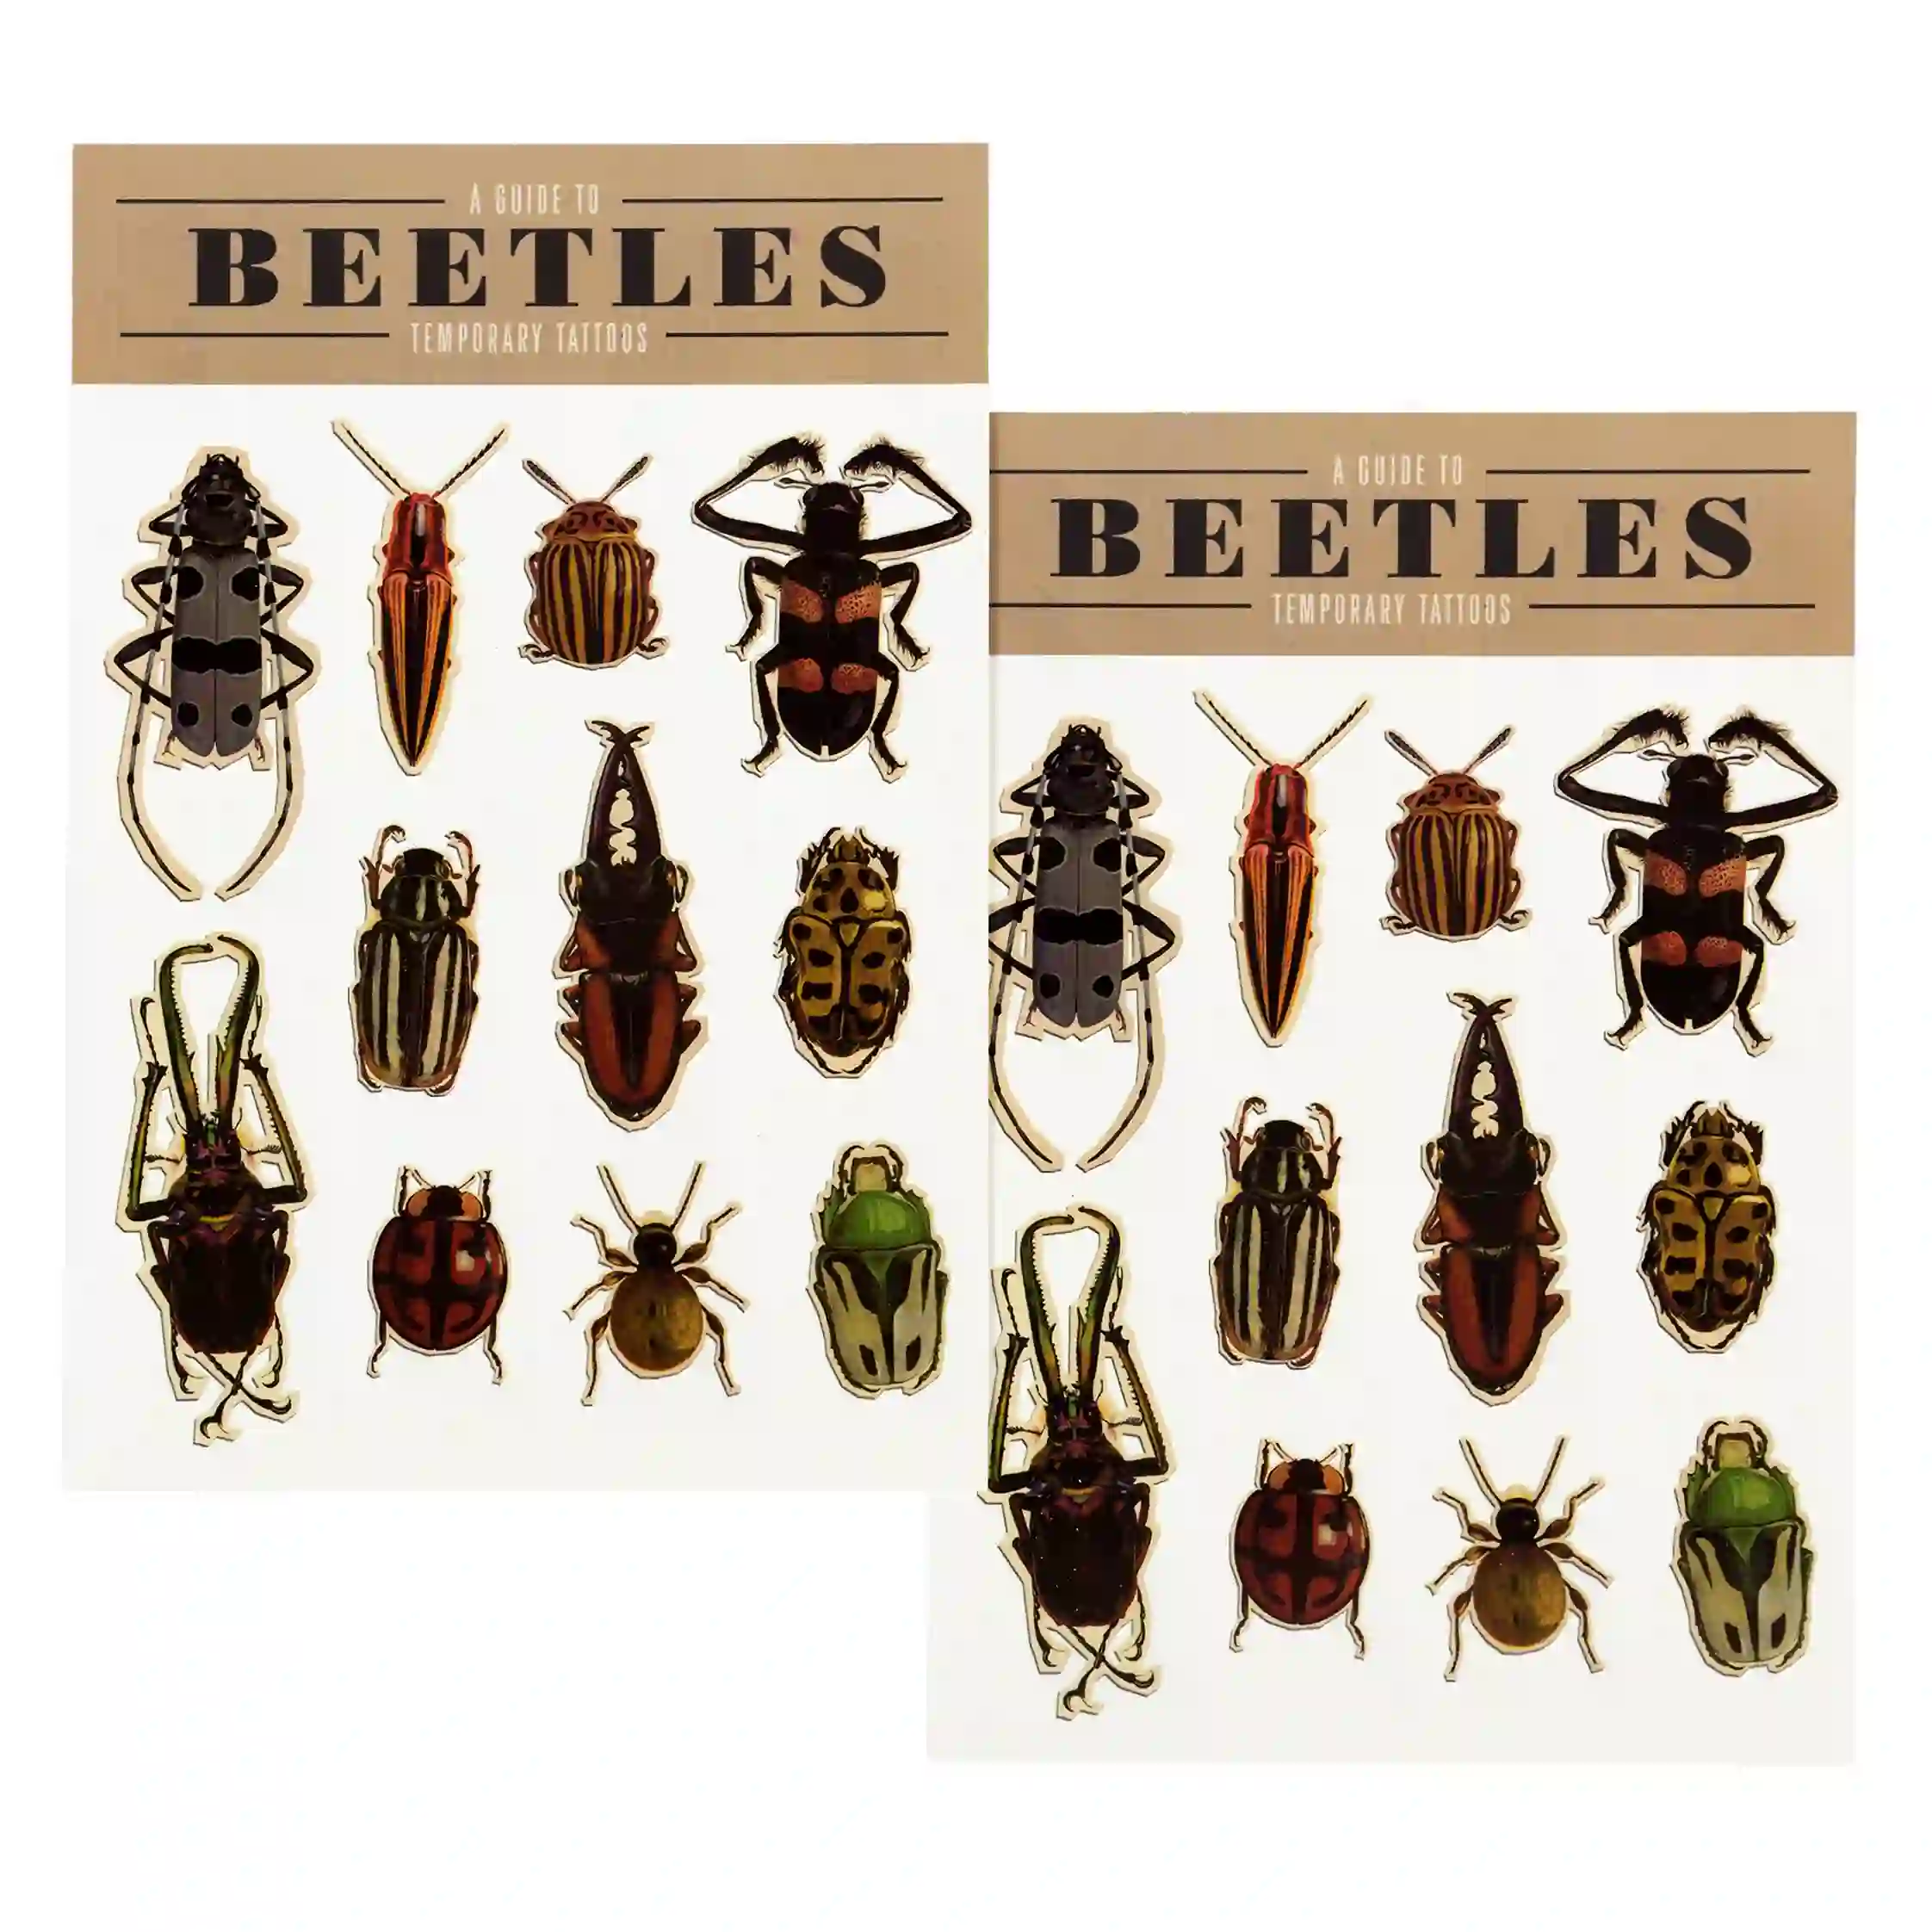 temporary tattoos - beetles